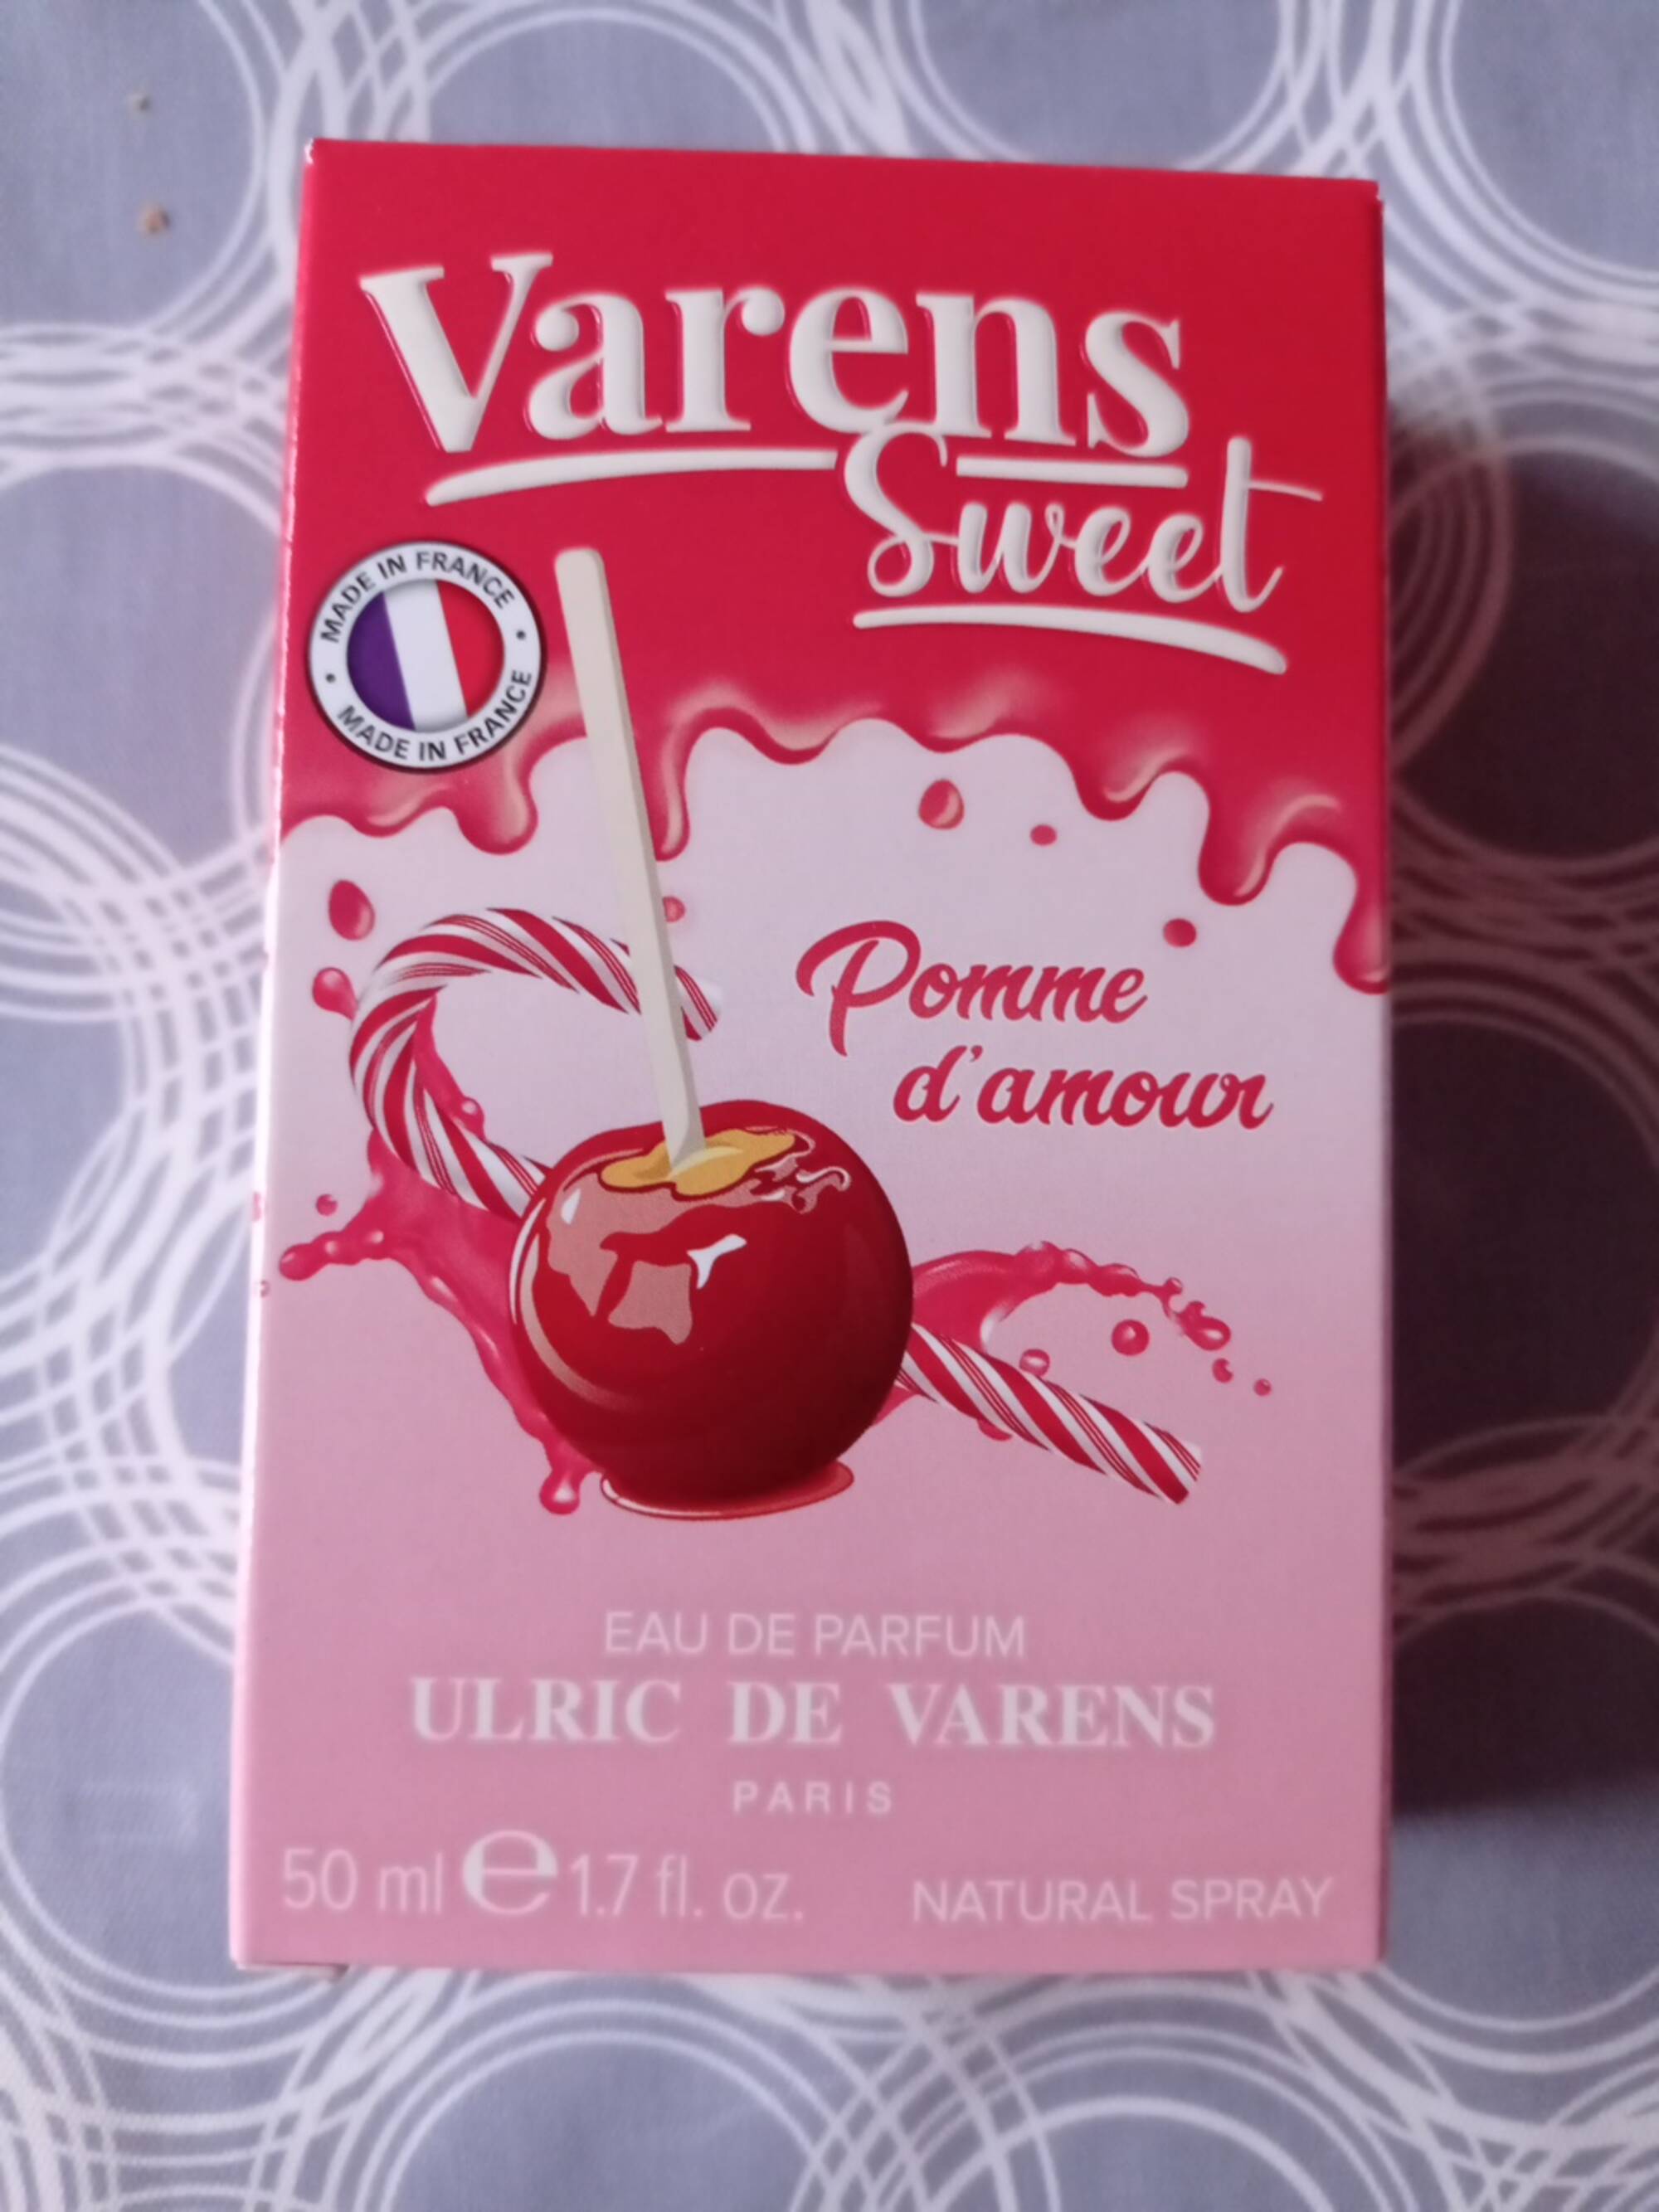 ULRIC DE VARENS - Varens sweet - Eau de parfum pomme d'amour